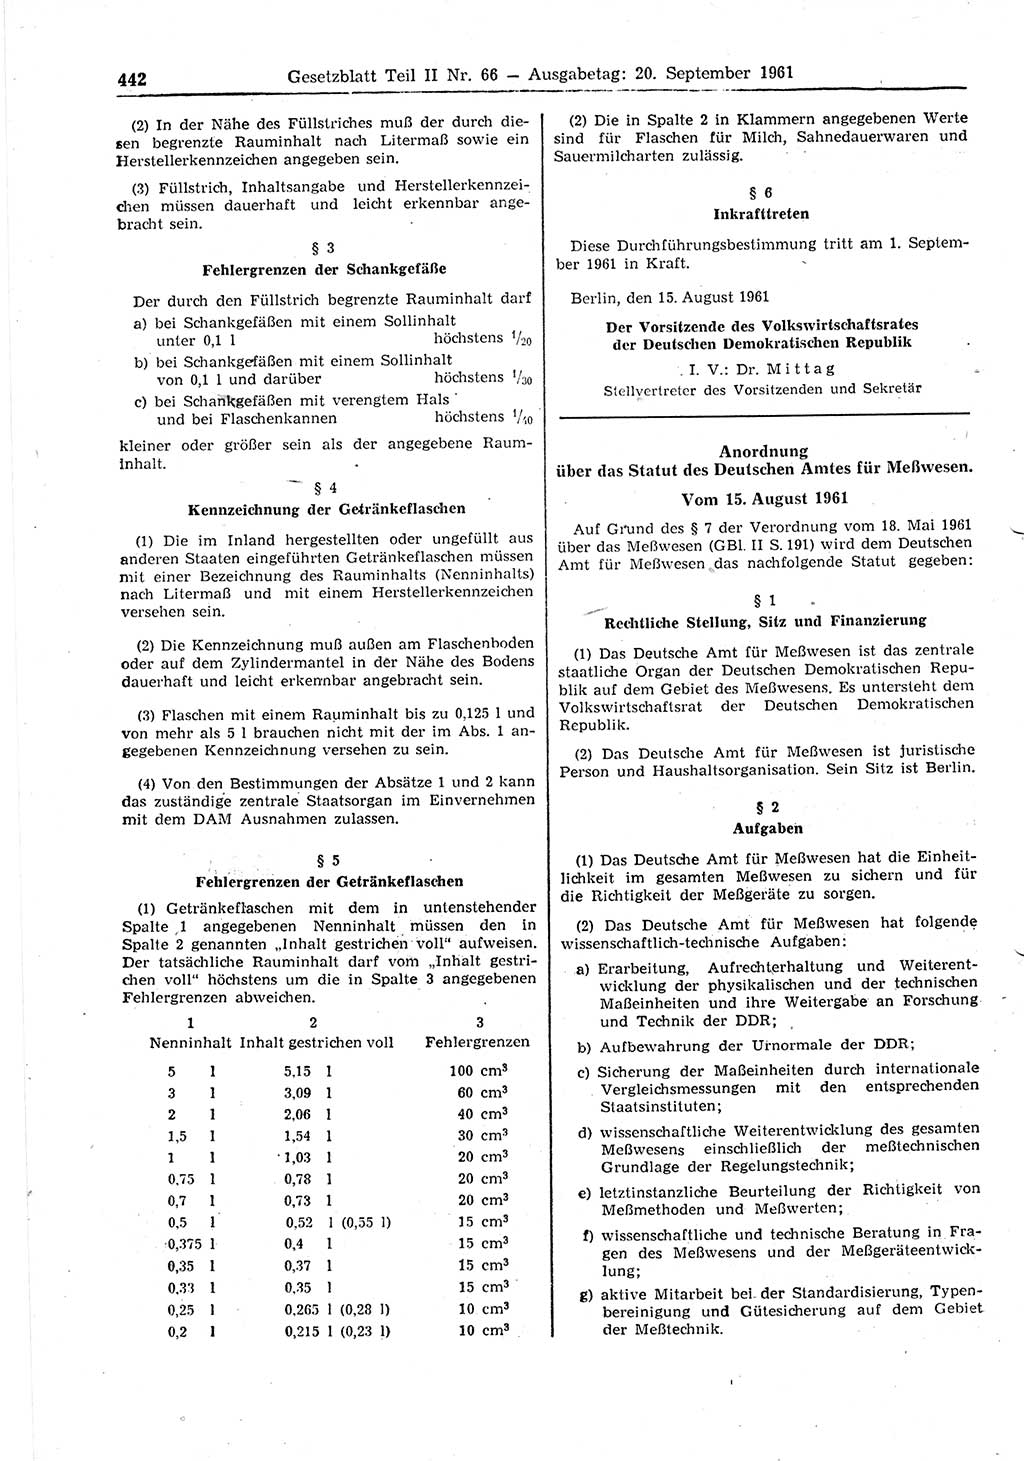 Gesetzblatt (GBl.) der Deutschen Demokratischen Republik (DDR) Teil ⅠⅠ 1961, Seite 442 (GBl. DDR ⅠⅠ 1961, S. 442)